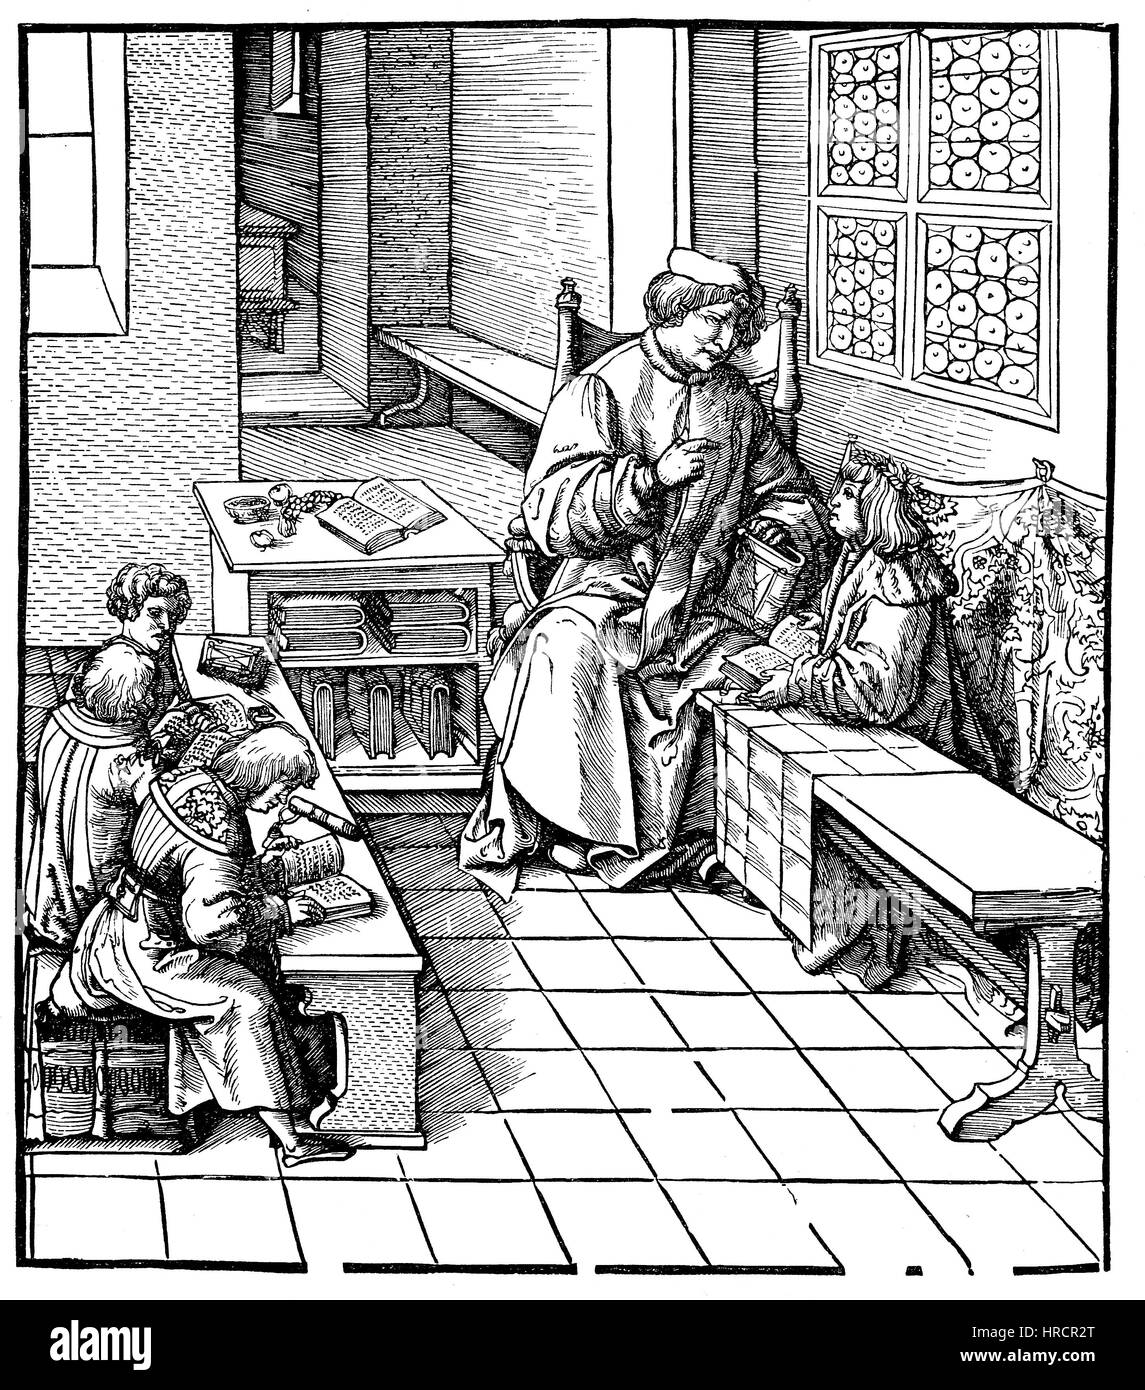 Maximilian erhält Unterricht, Faksimile von einem Holzschnitt illustriert von Hans Burgkmair 1473-1531, Deutschland, Maximilian I., 1459-1519, Reproduktion von einem Holzschnitt aus dem 19. Jahrhundert, 1885 Stockfoto